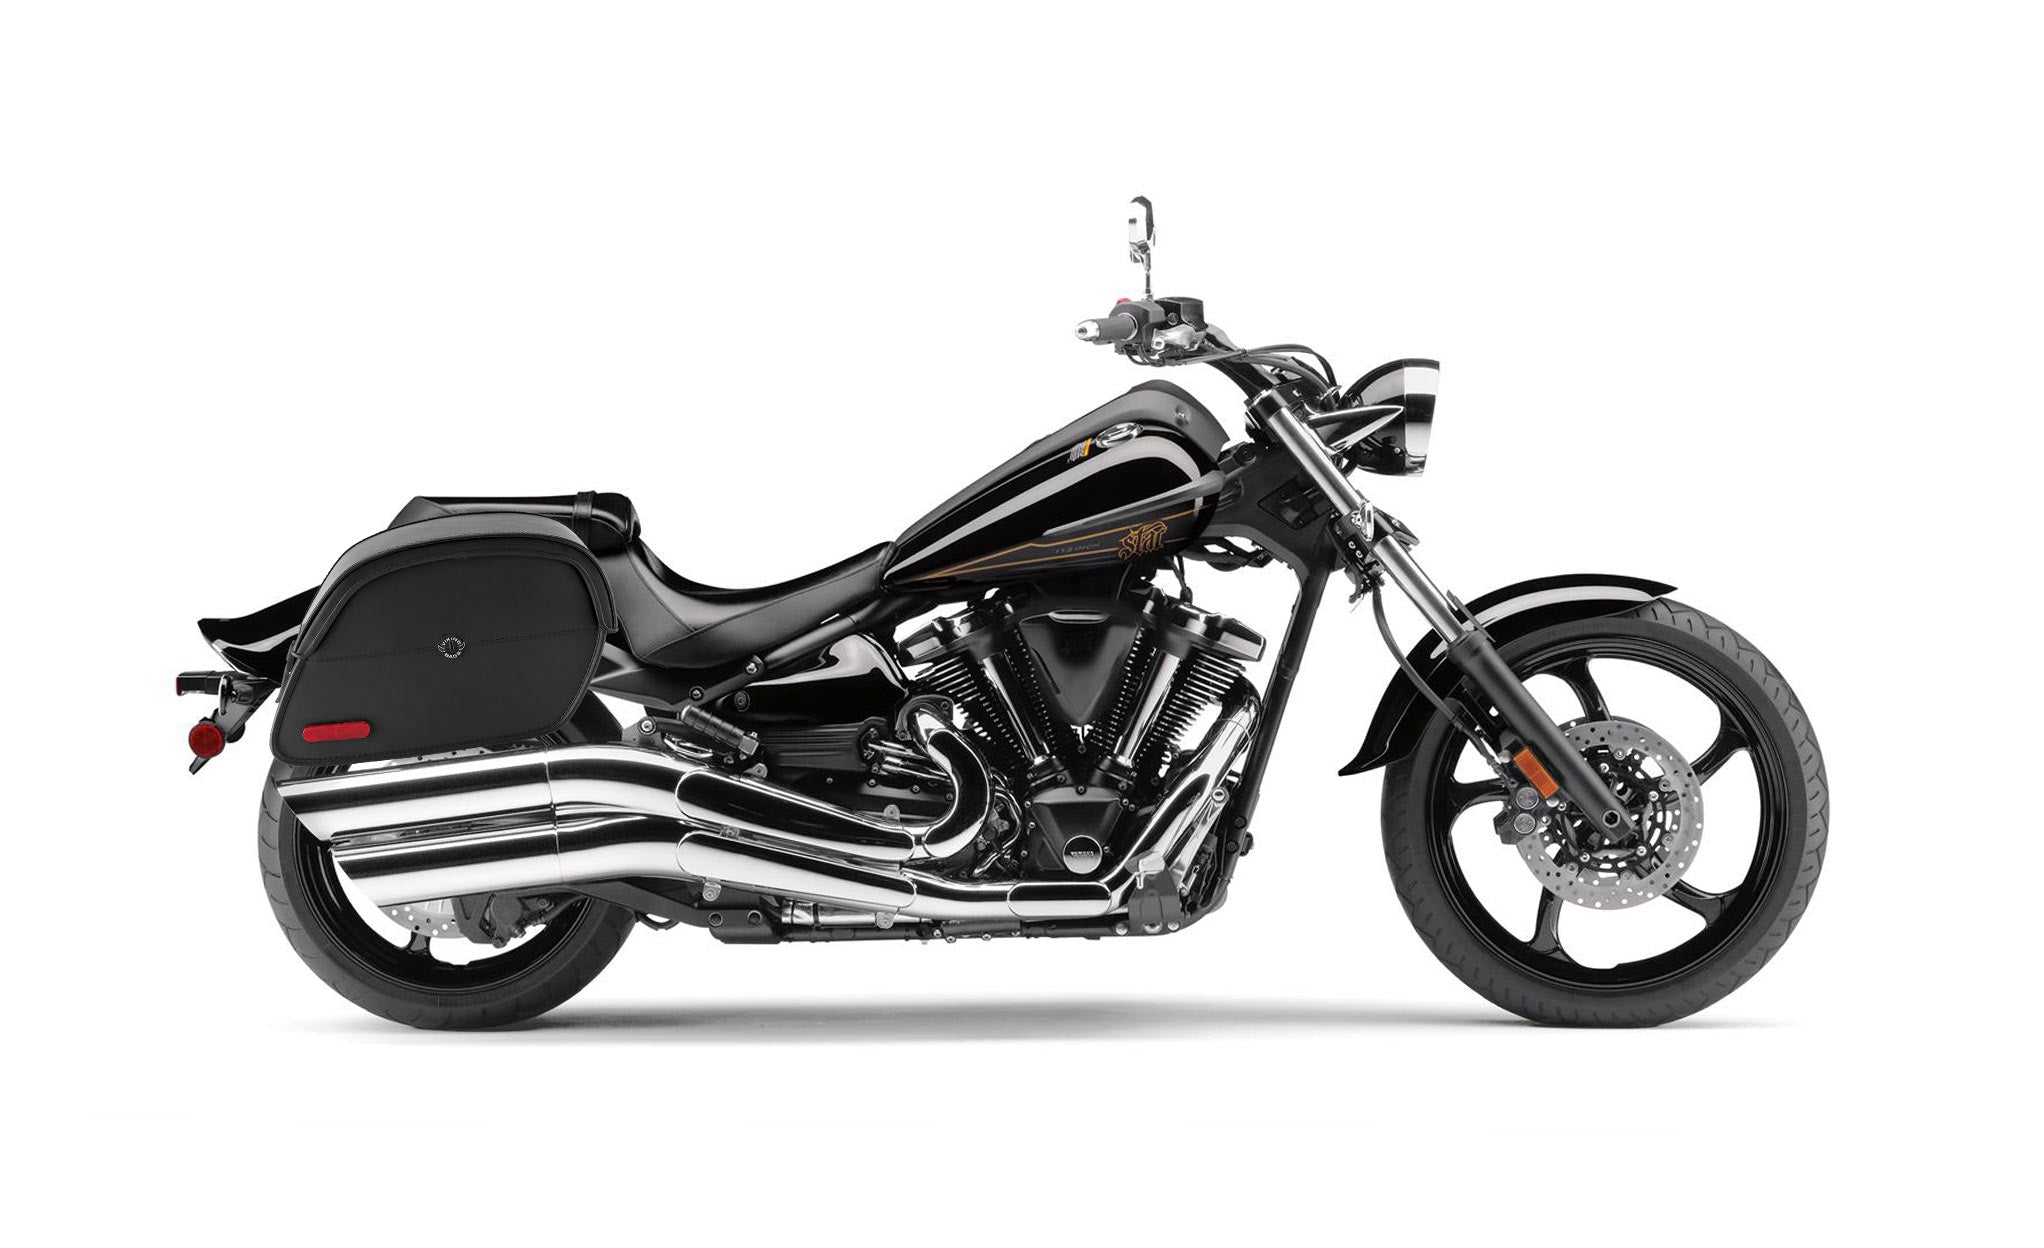 Viking California Large Yamaha Raider Leather Motorcycle Saddlebags on Bike Photo @expand